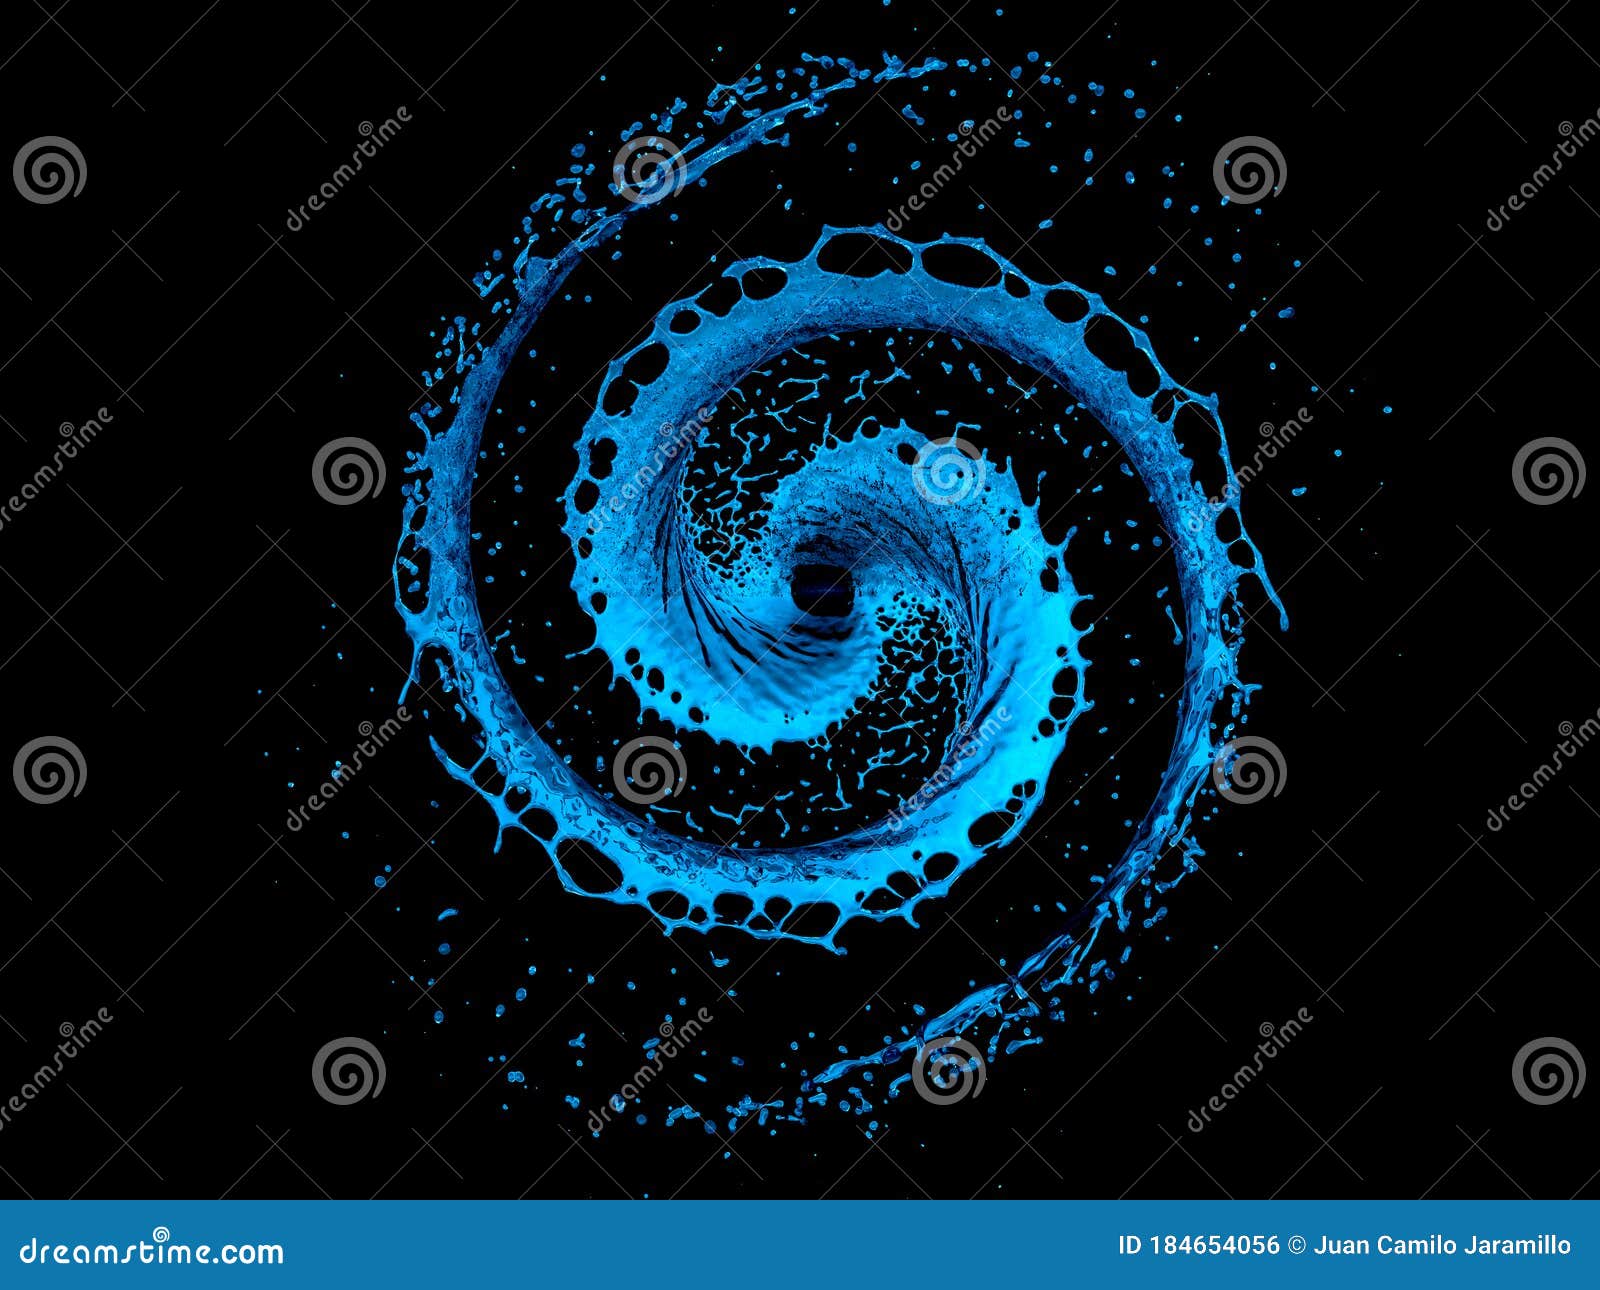 spiral blue water splash  on a black background